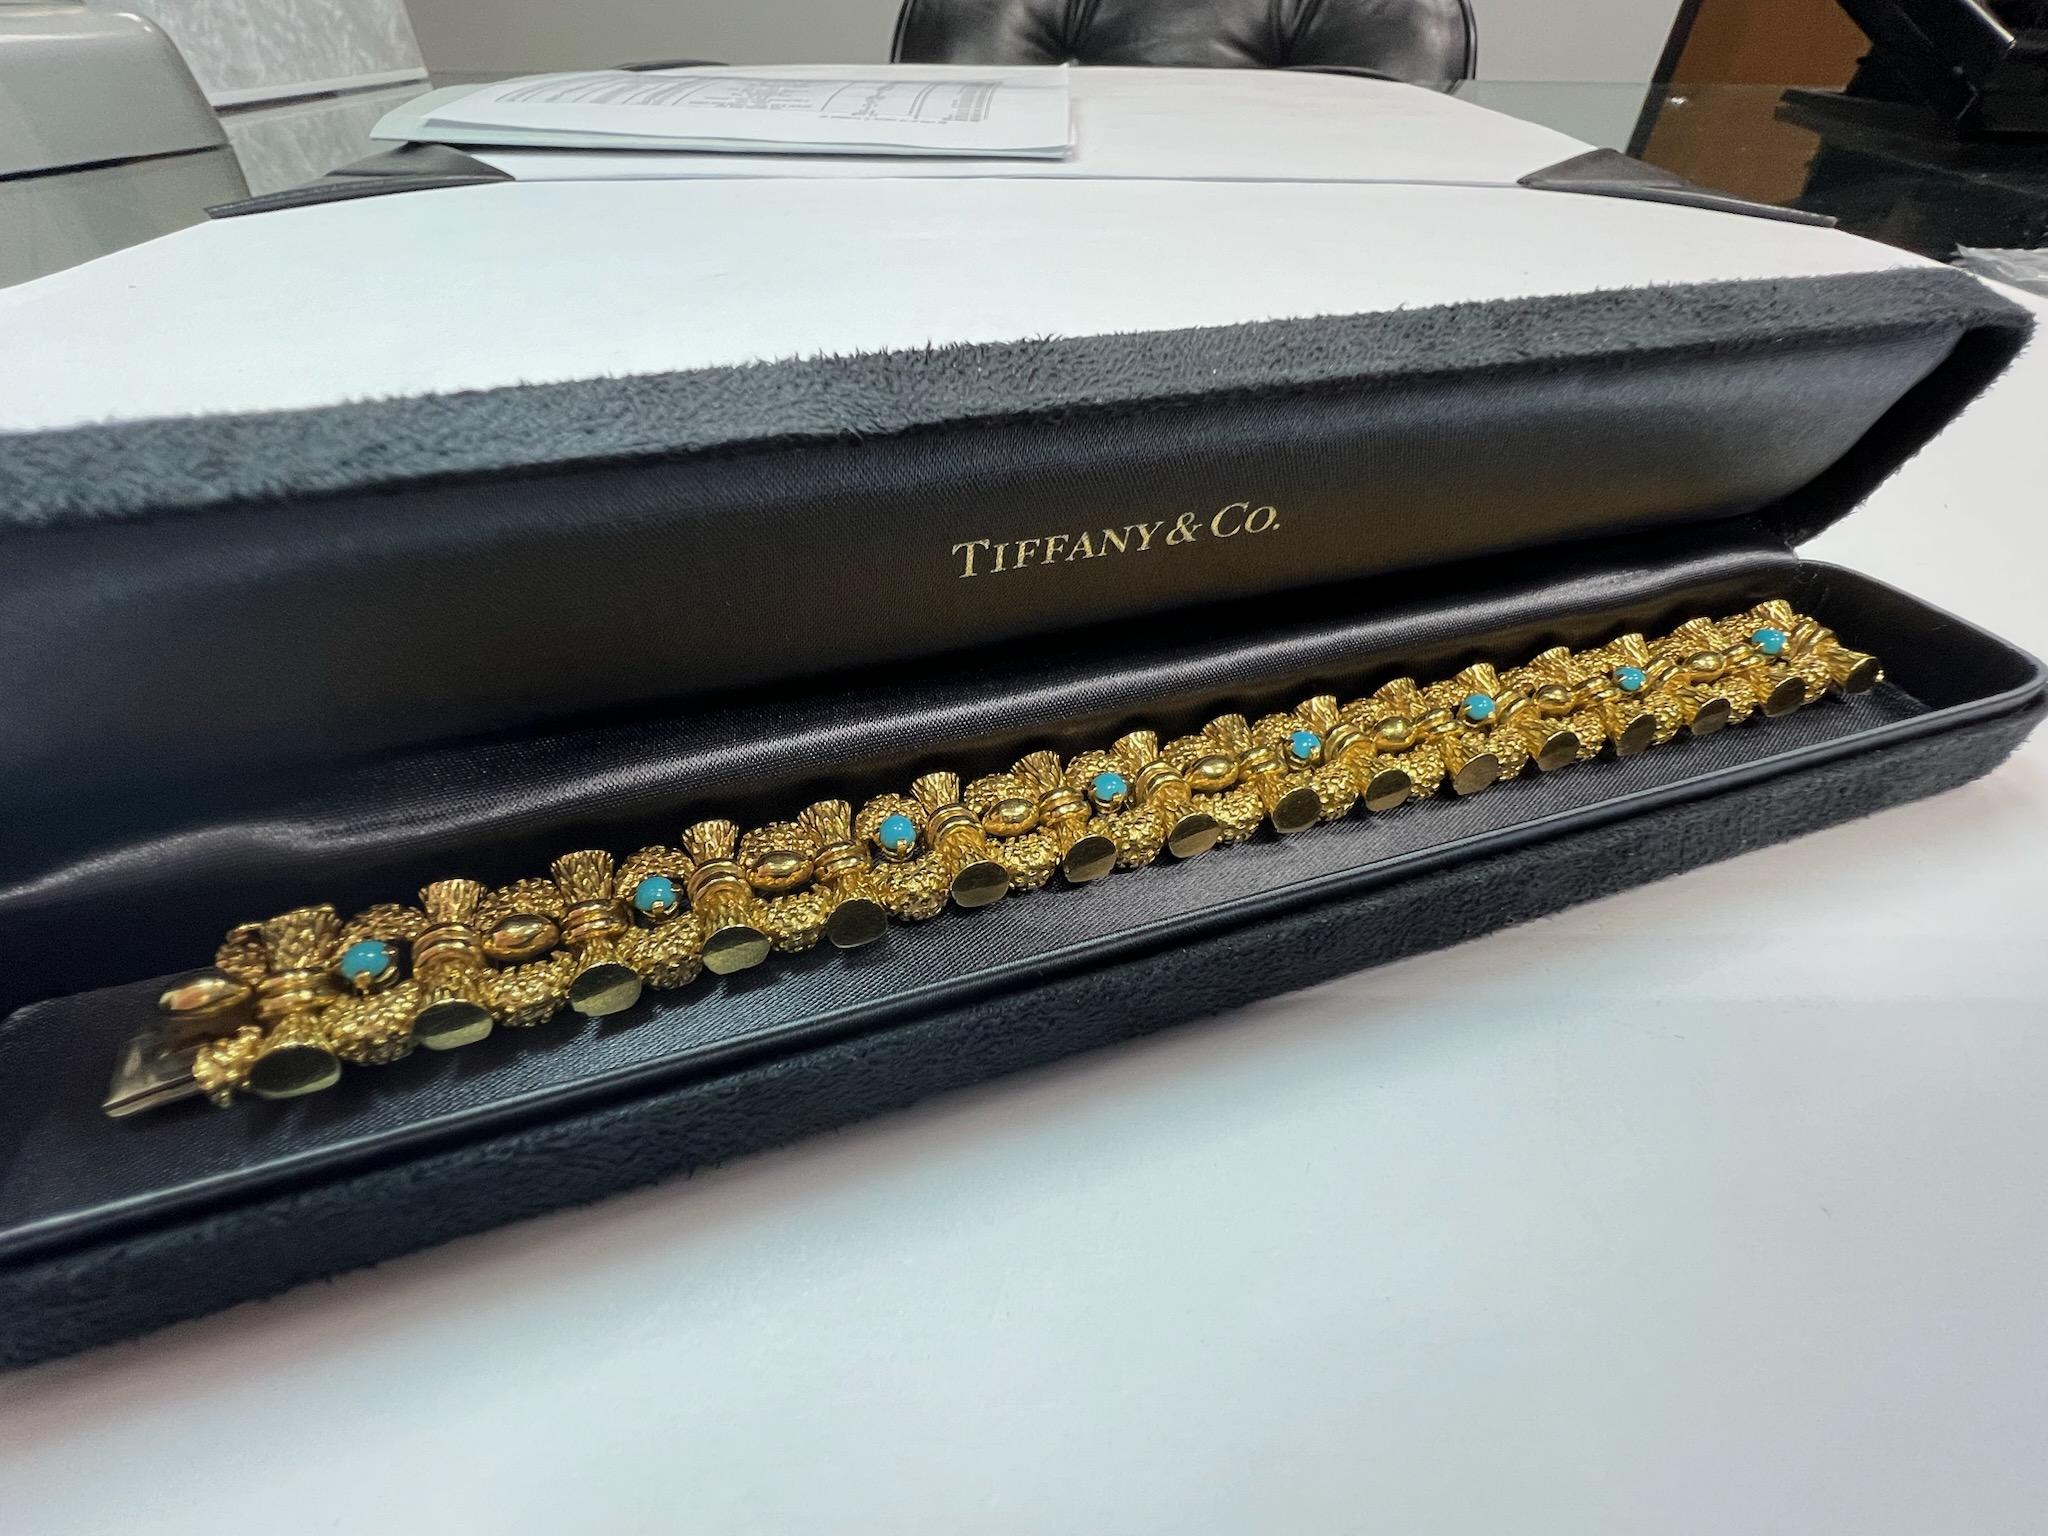 Ein prächtiges Armband aus Türkis und 18k Gelbgold von TIFFANY&CO, CIRCA 1960er Jahre.

Das Gewicht beträgt 87 Gramm, die Länge ist 7 Zoll, die Breite ist etwas mehr als 1/2 Zoll (15mm). 

Keine Originalpapiere.